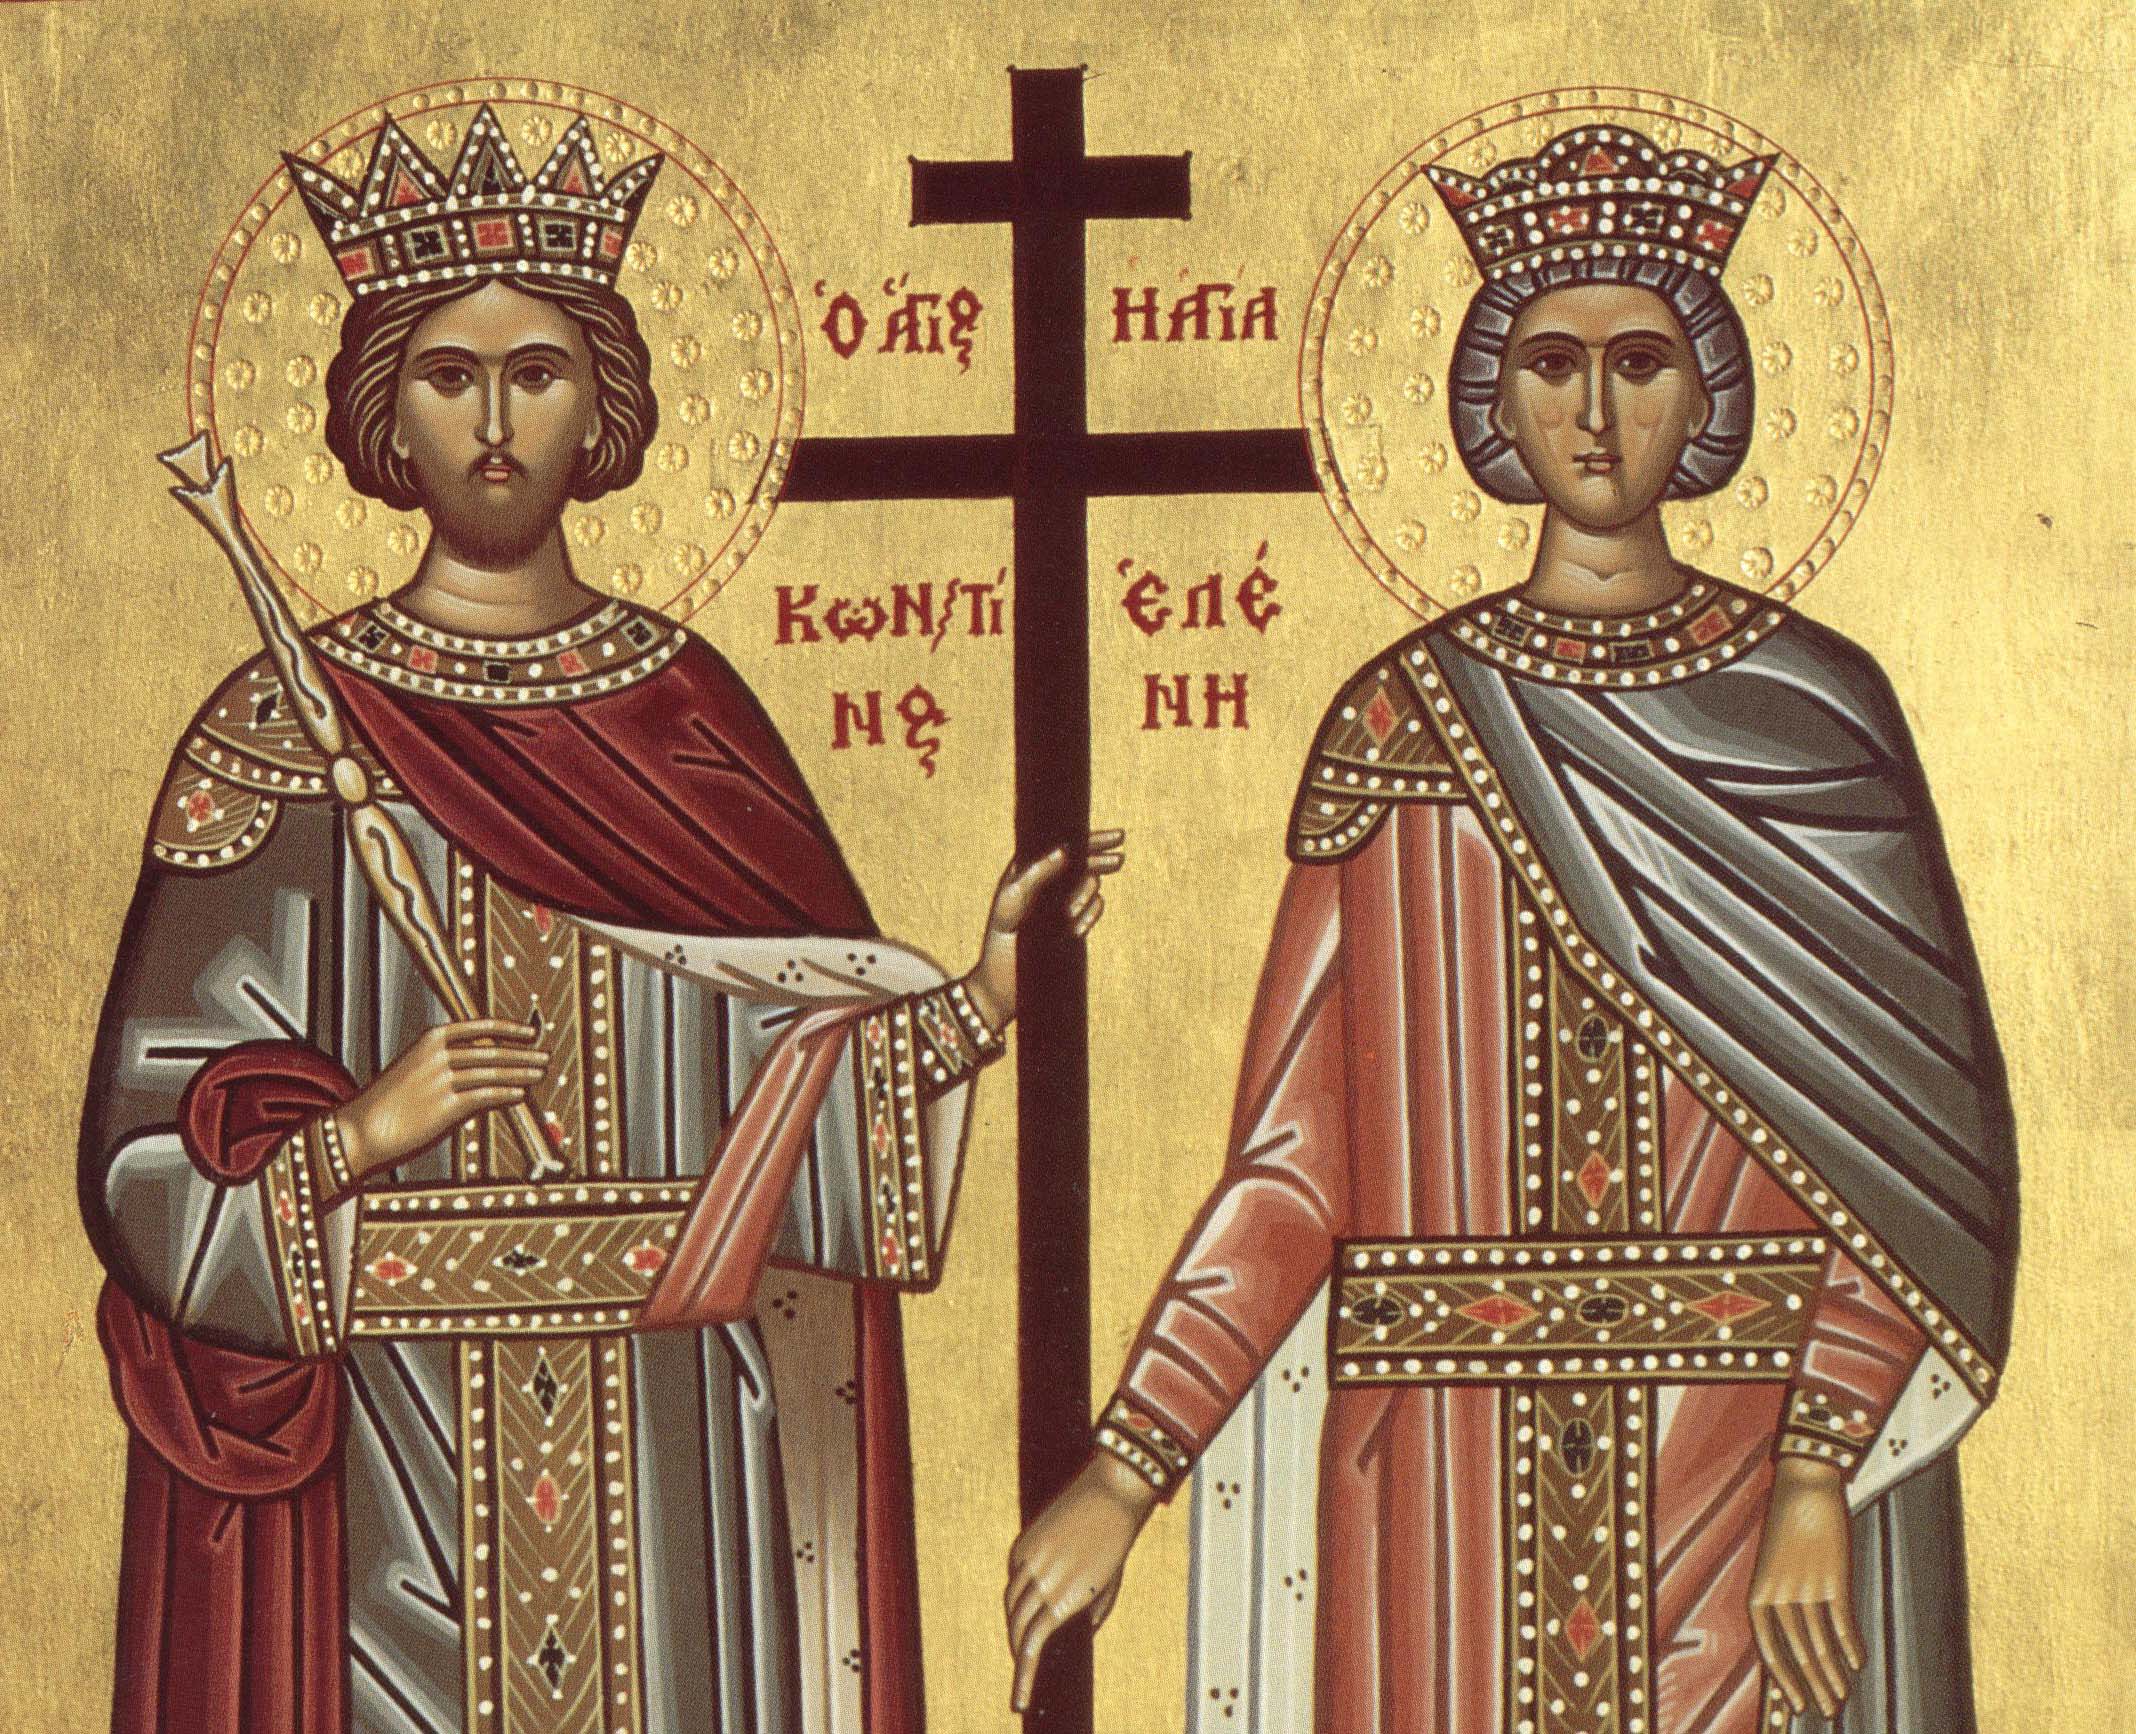 La Mulți Ani de Sfinții Constantin și Elena!